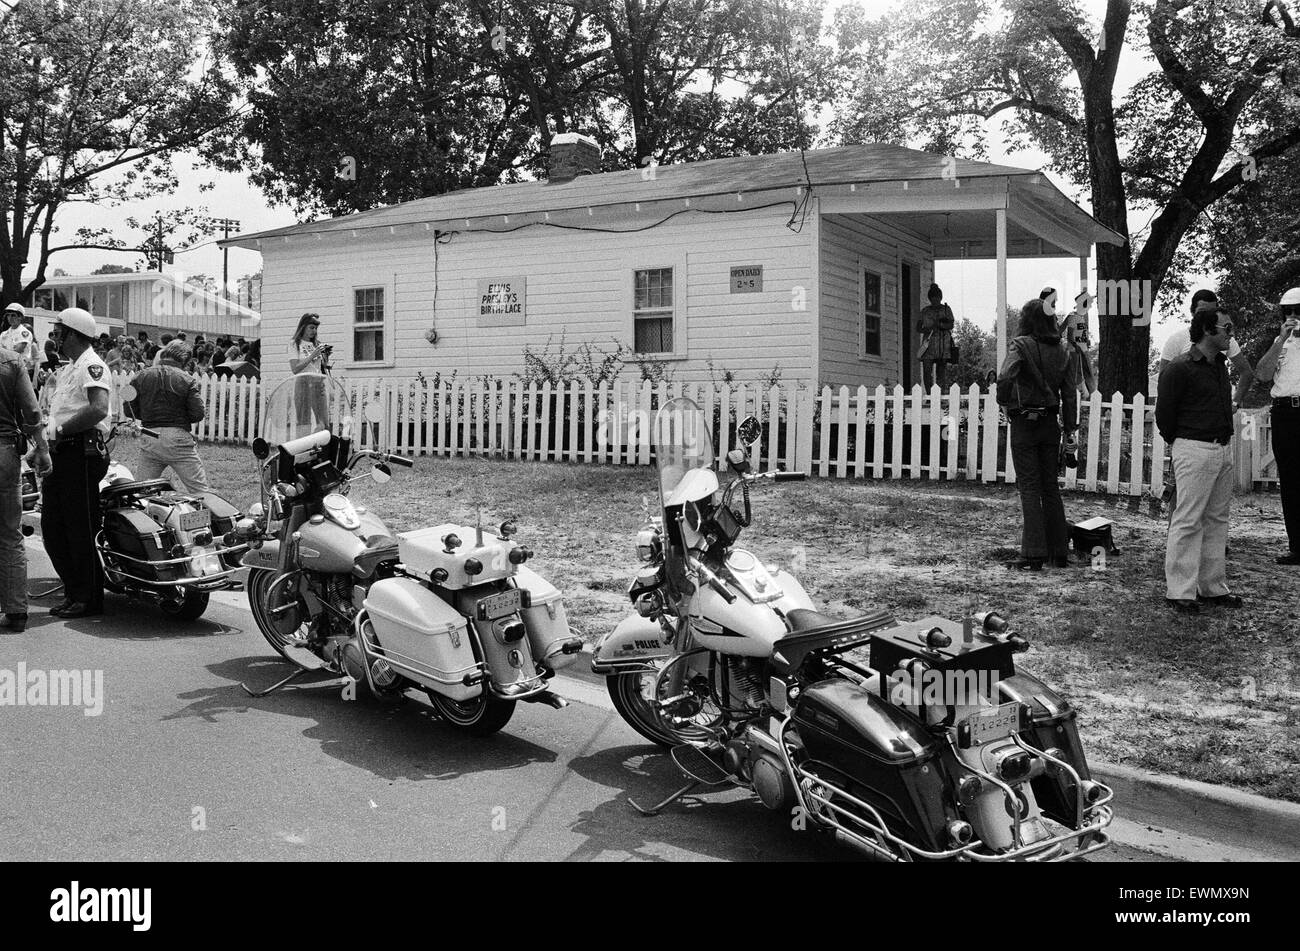 La casa e il luogo di nascita di Elvis Presley in Tupelo, Lee County, Mississippi, Stati Uniti d'America, 27 agosto 1973. Foto Stock